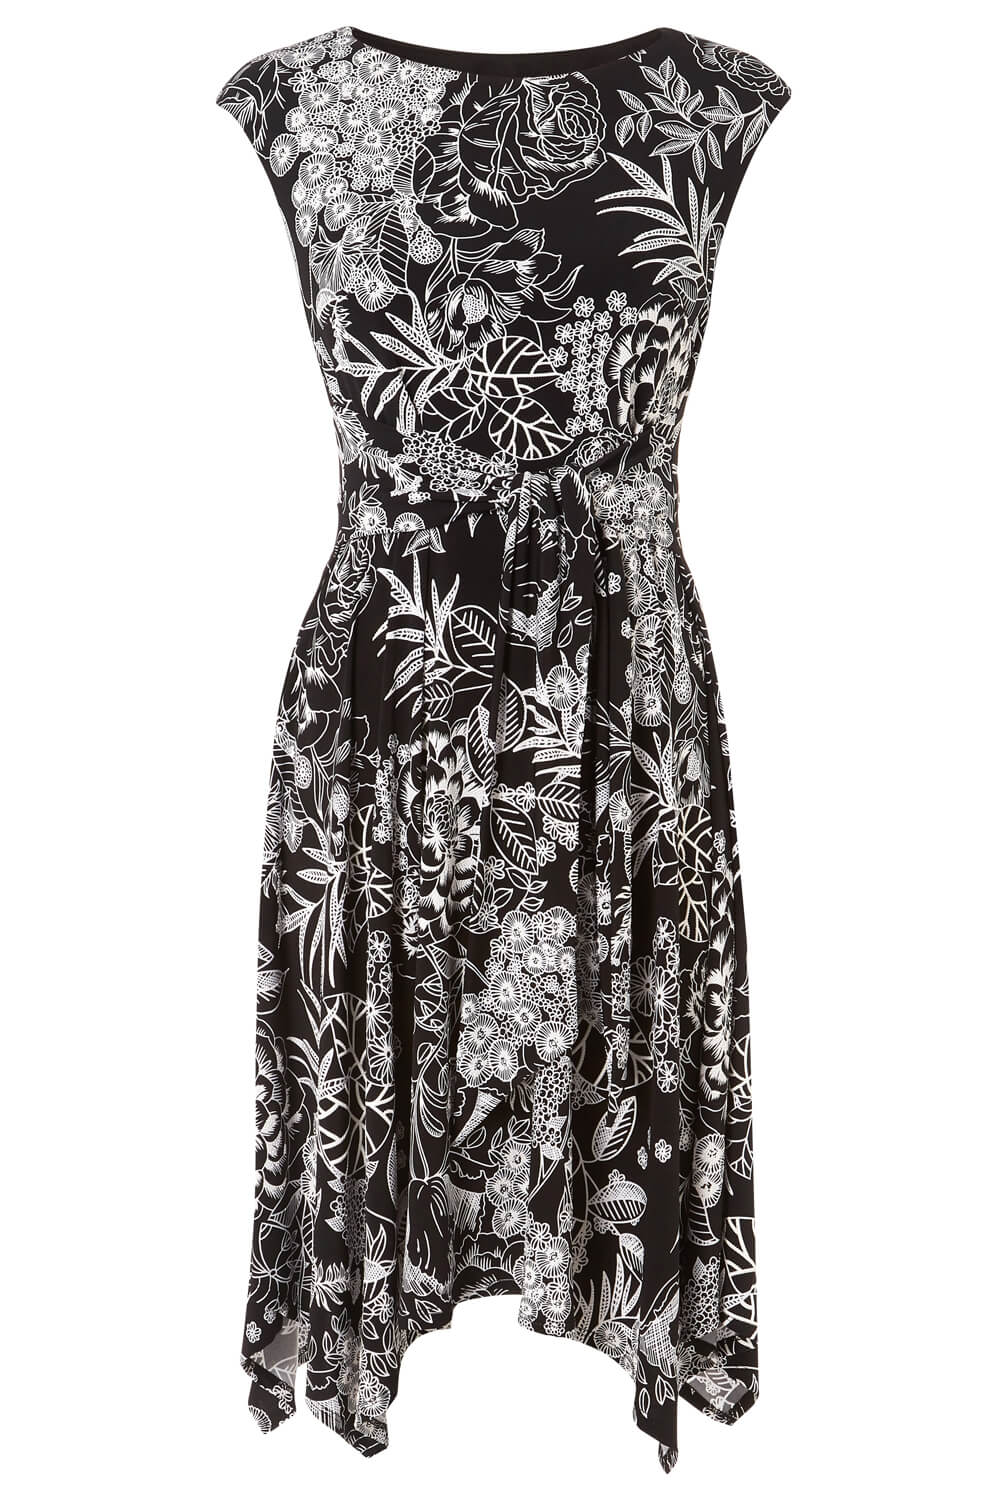 Black Floral Print Hanky Hem Dress, Image 5 of 5